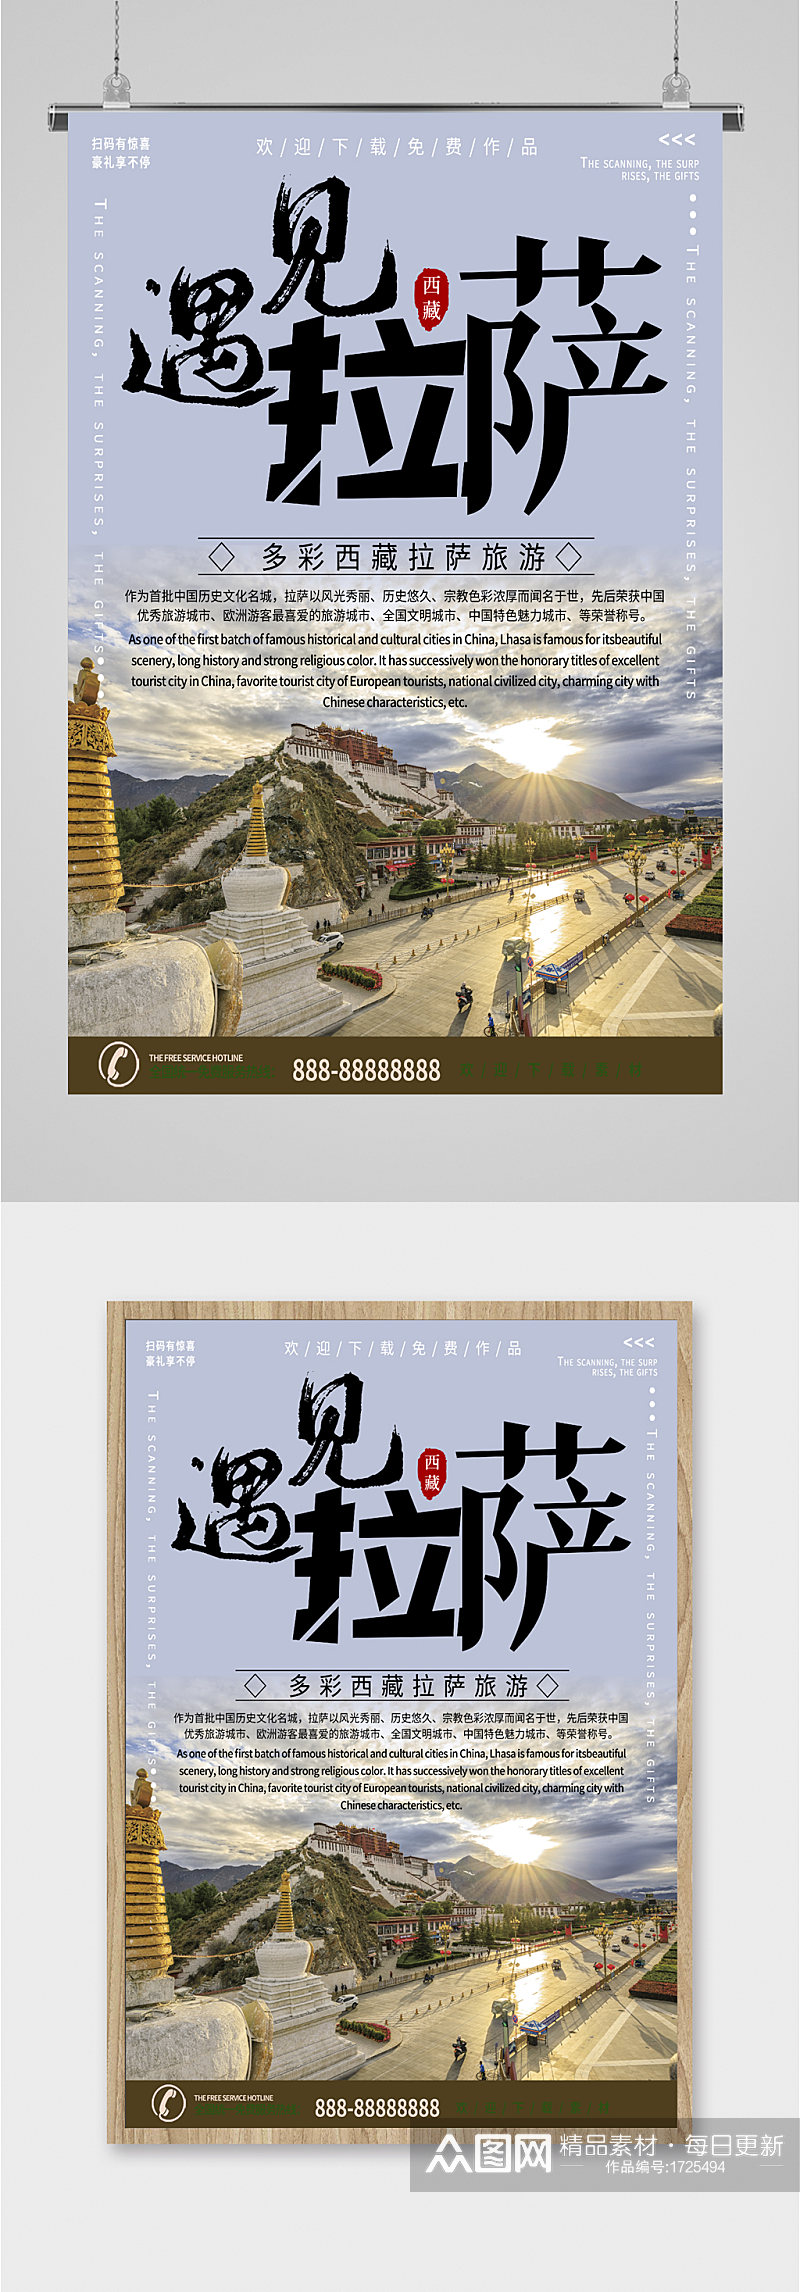 西藏拉萨旅游摄影海报素材